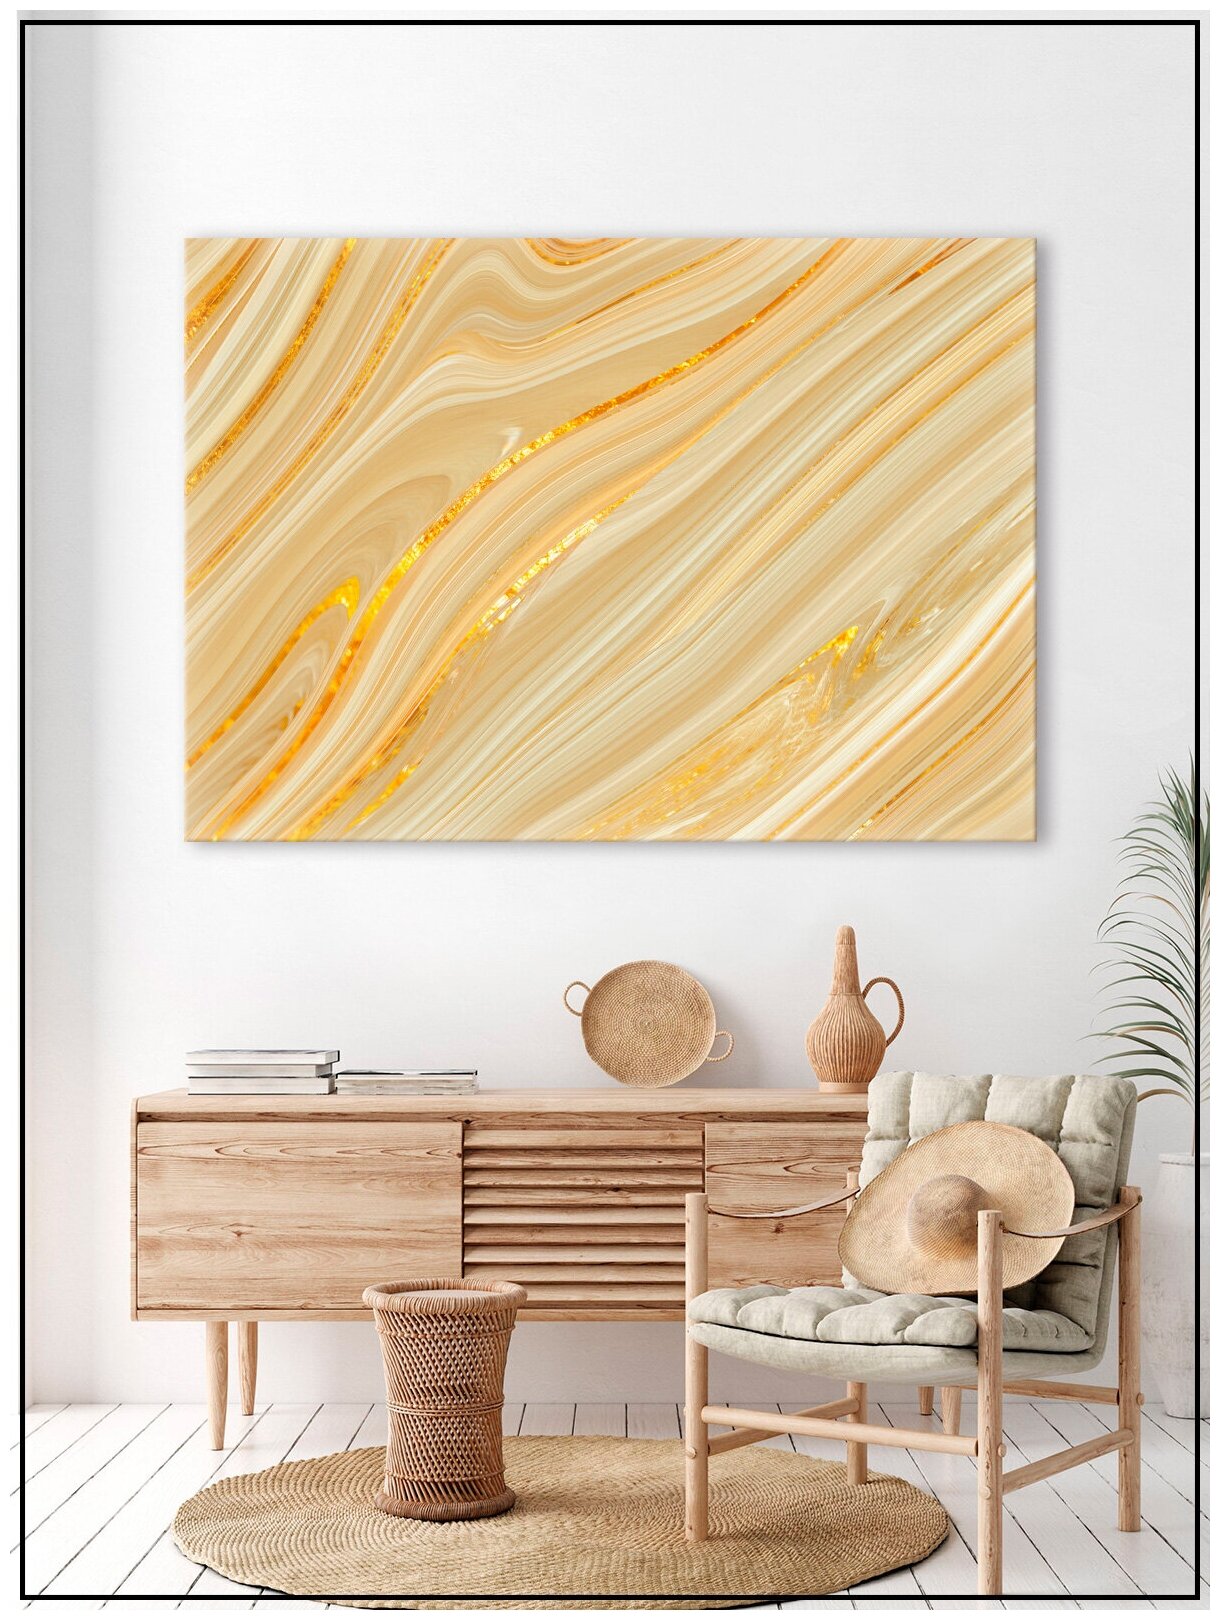 Картина для интерьера на натуральном хлопковом холсте "Абстракция бежевый мрамор", 30*40см, холст на подрамнике, картина в подарок